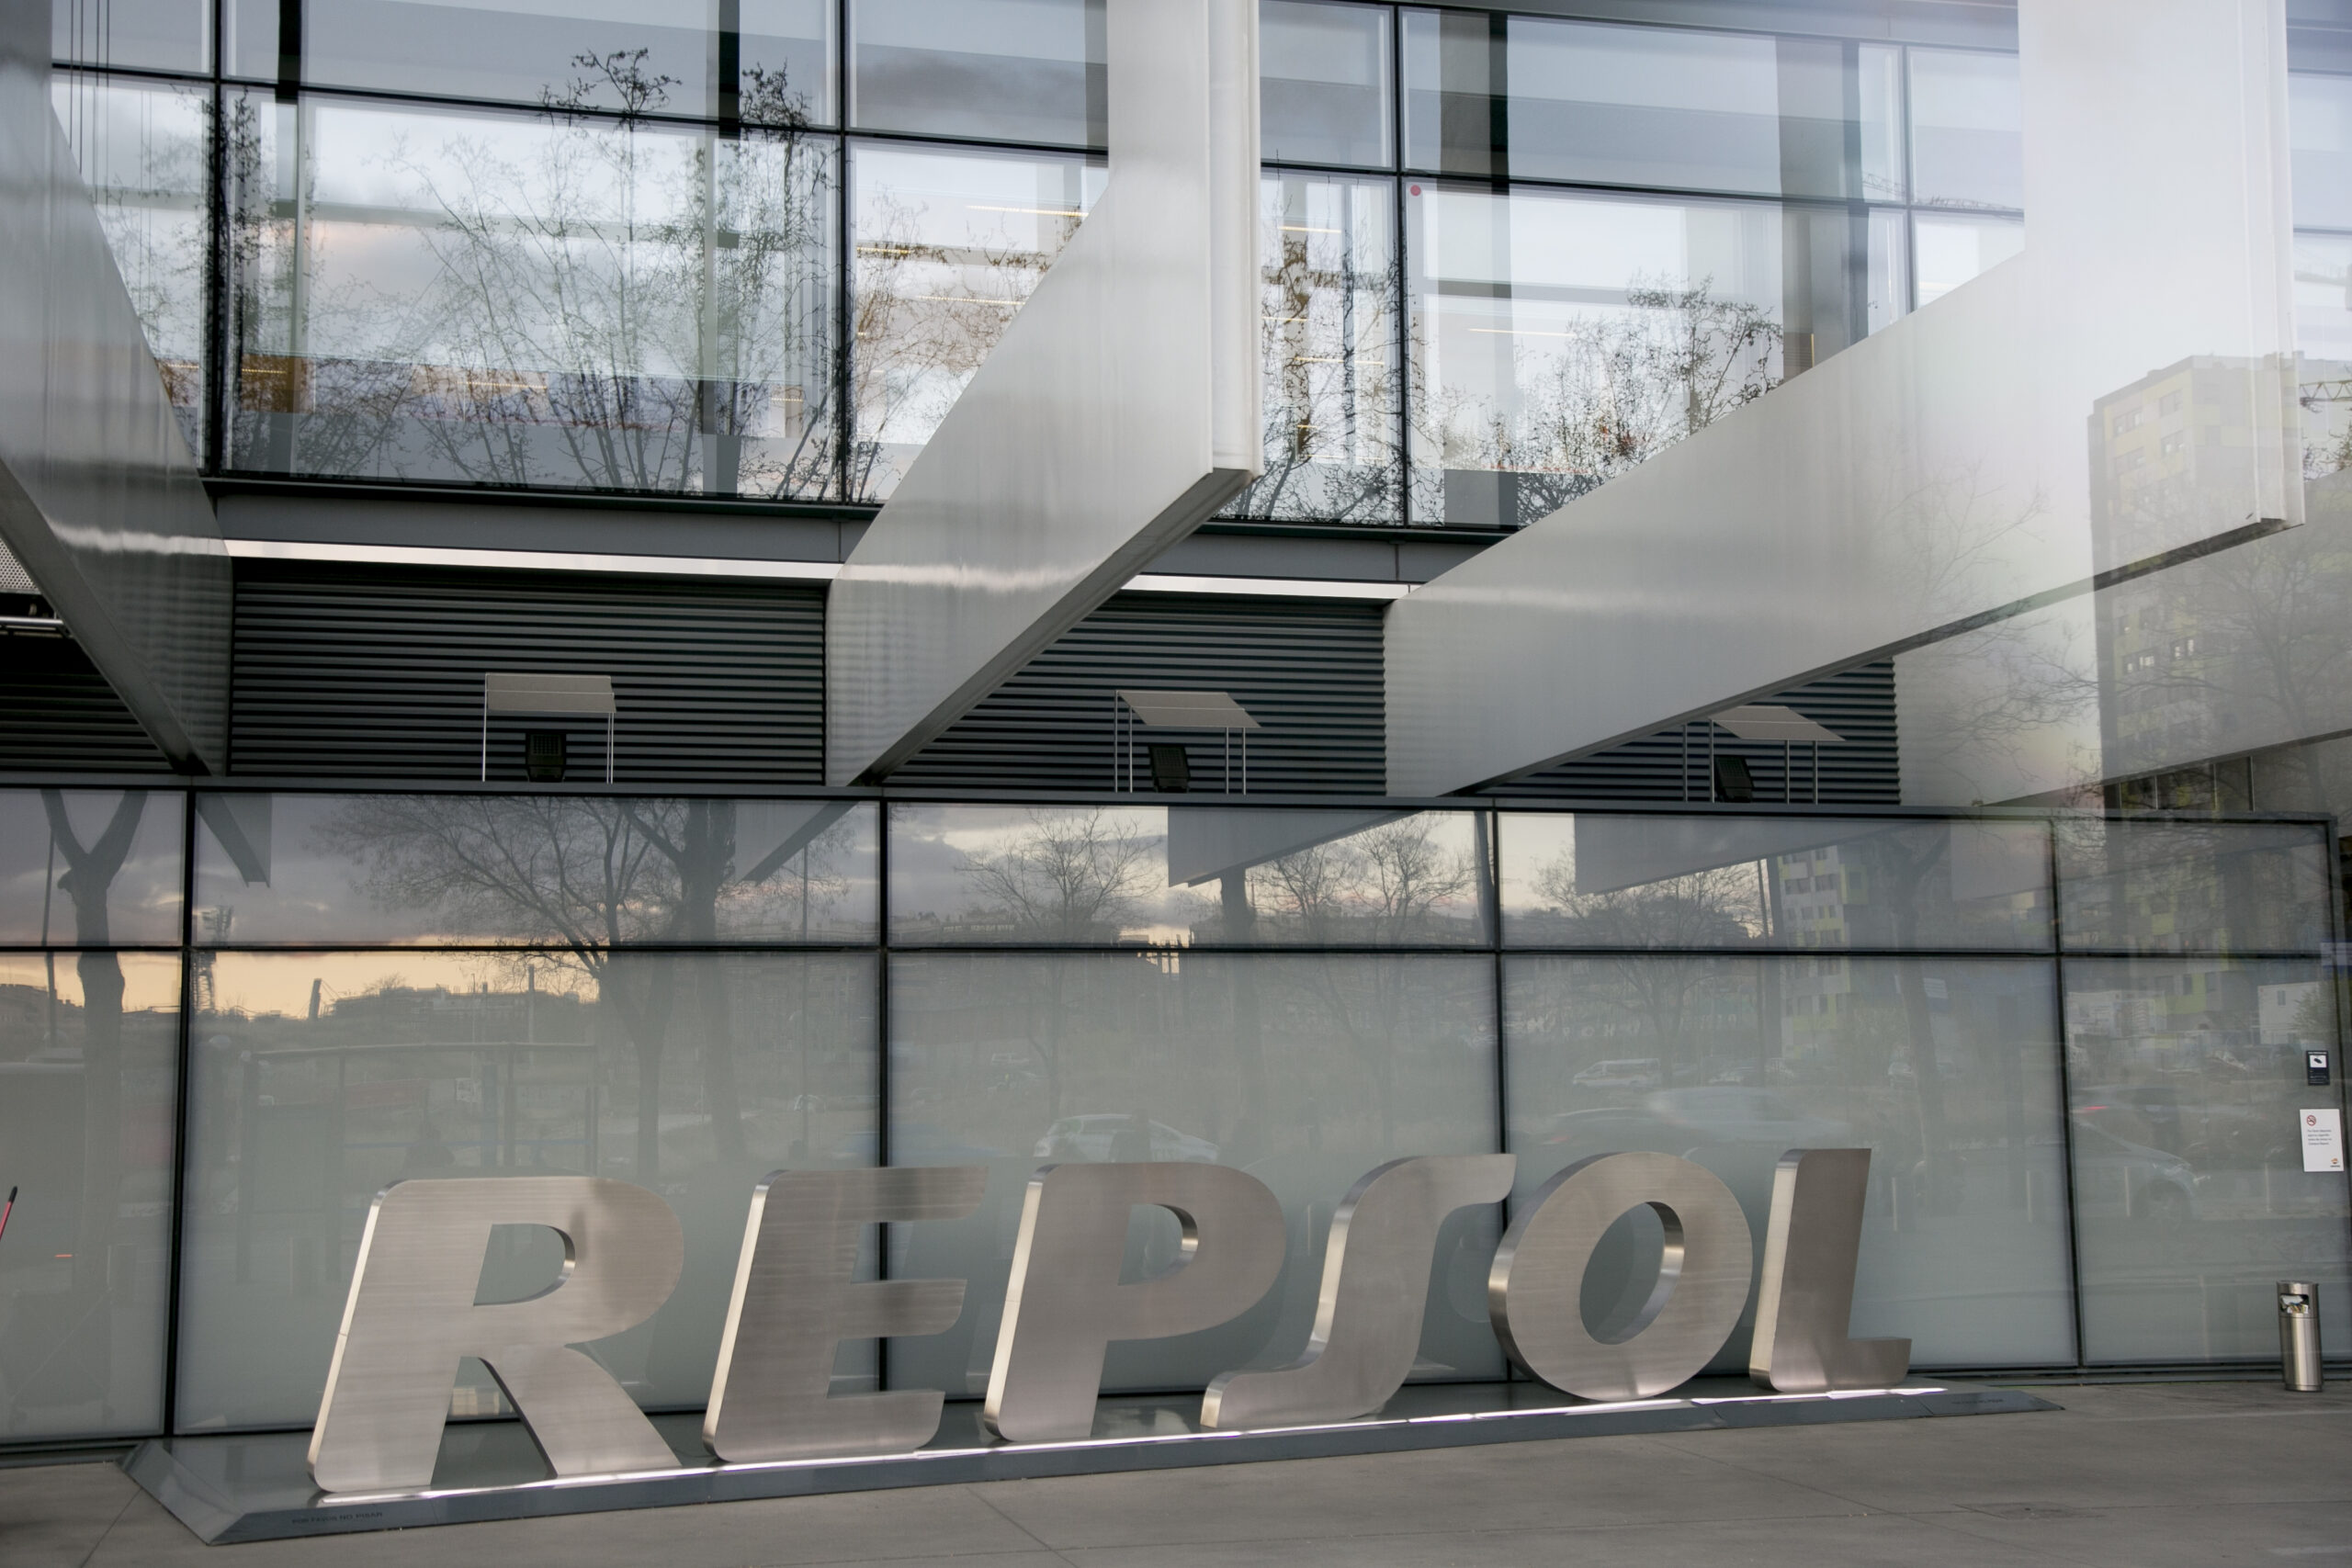 Trocar óleo alimentar por descontos em combustíveis: Repsol lança campanha inédita em Espanha. E em Portugal?